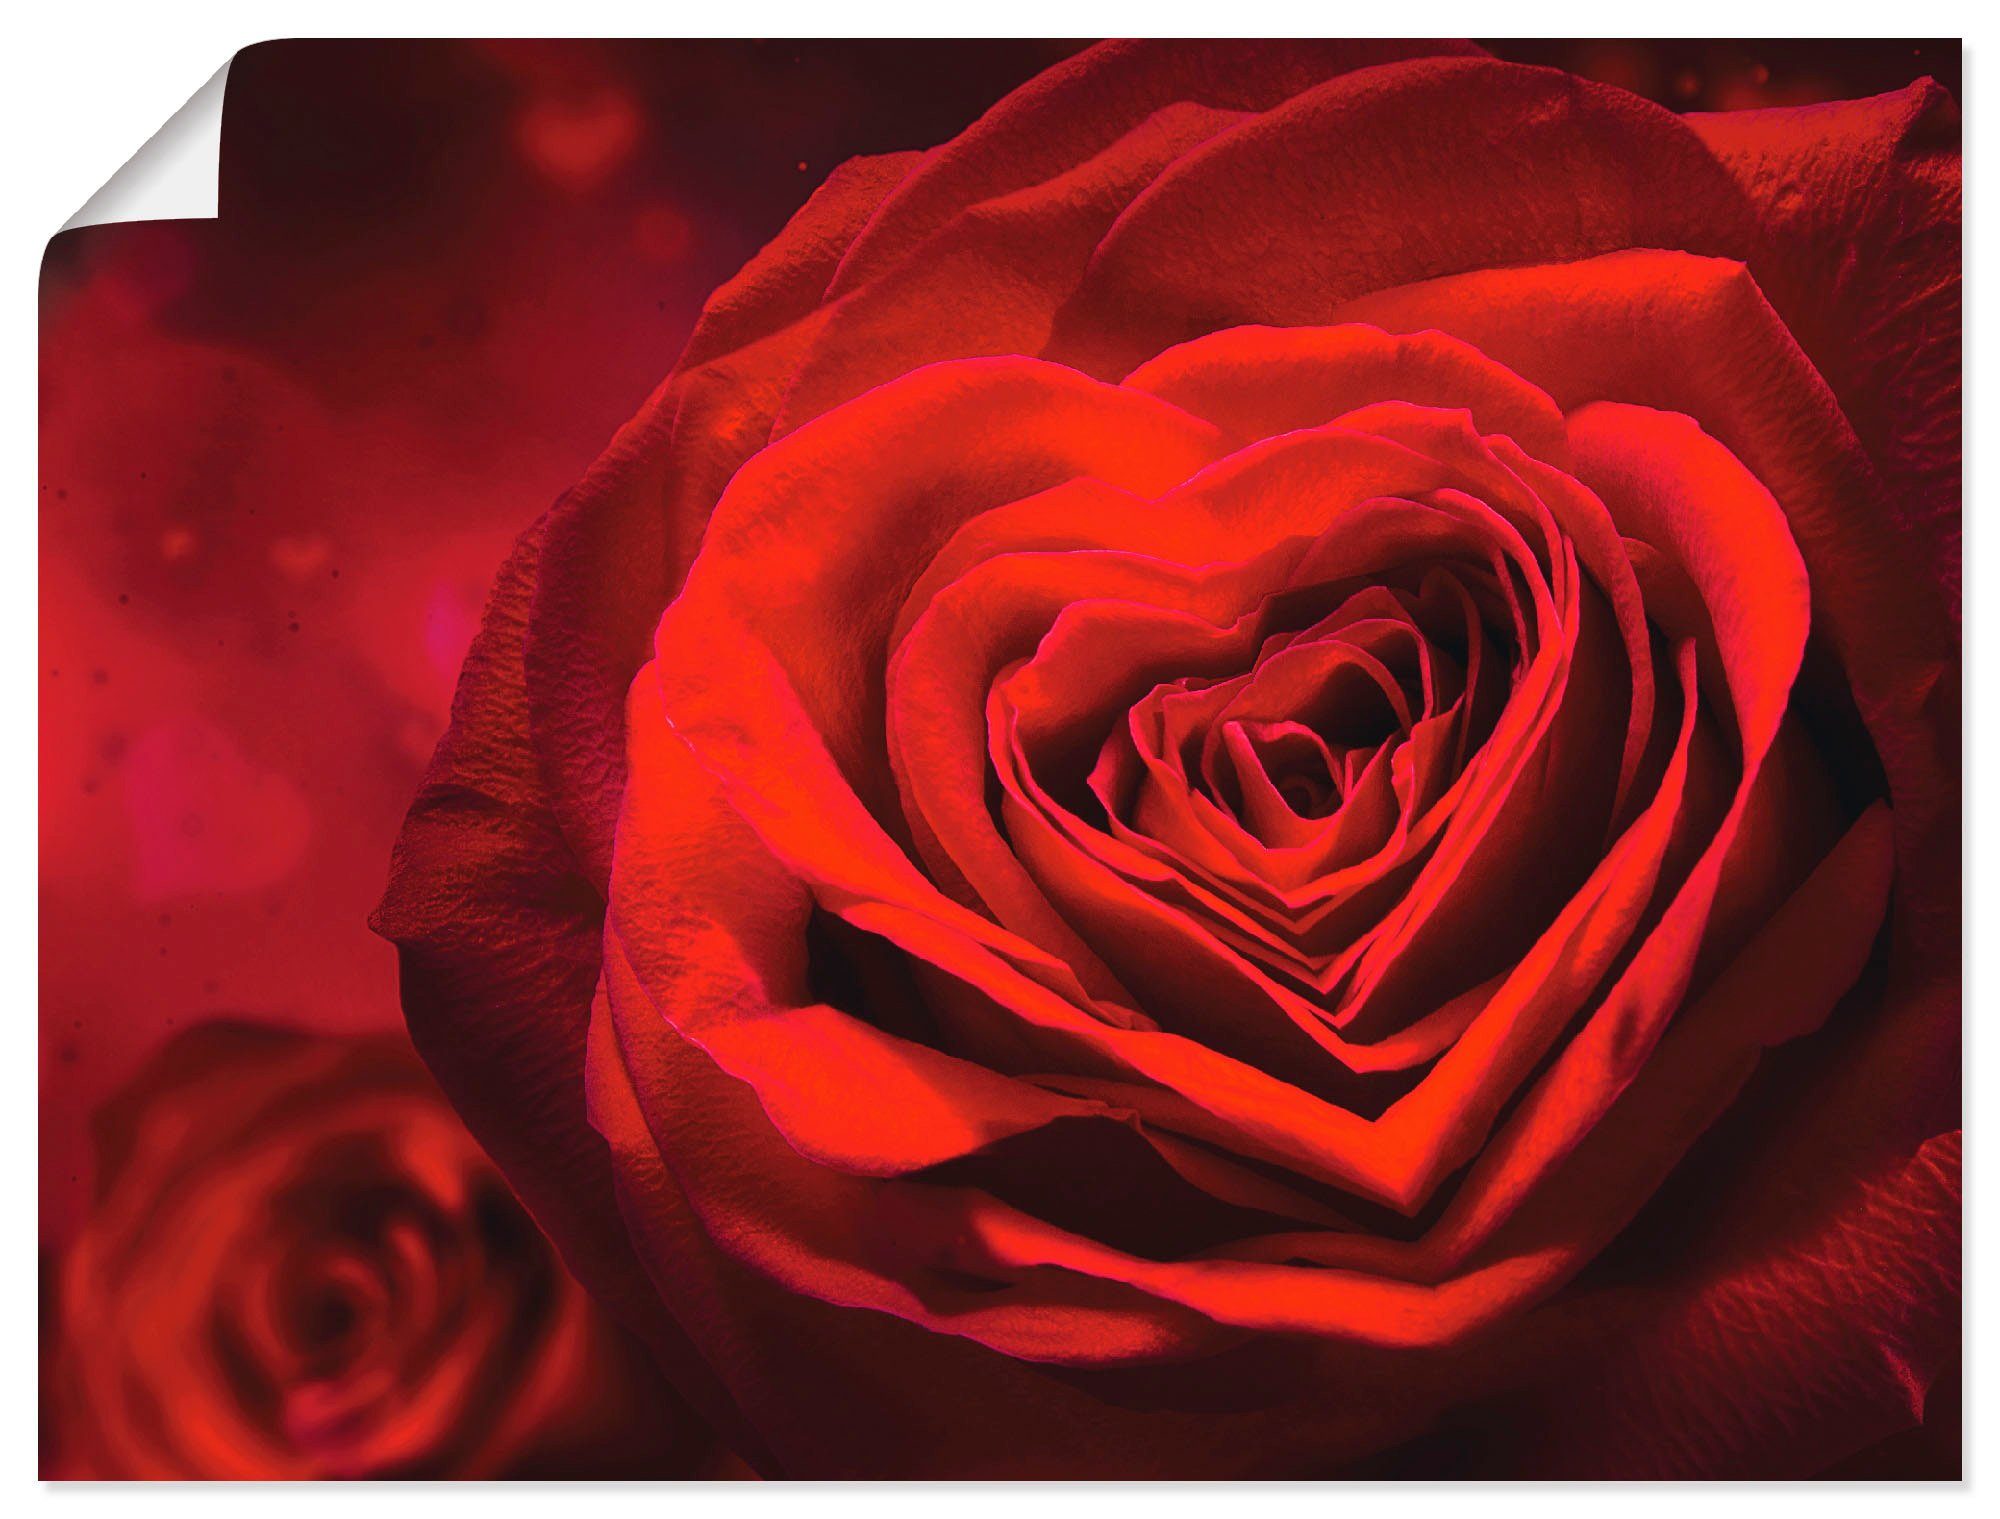 Artland Artprint Valentijnsuitnodiging met harten en rozen in vele afmetingen & productsoorten - artprint van aluminium / artprint voor buiten, artprint op linnen, poster, muurstic